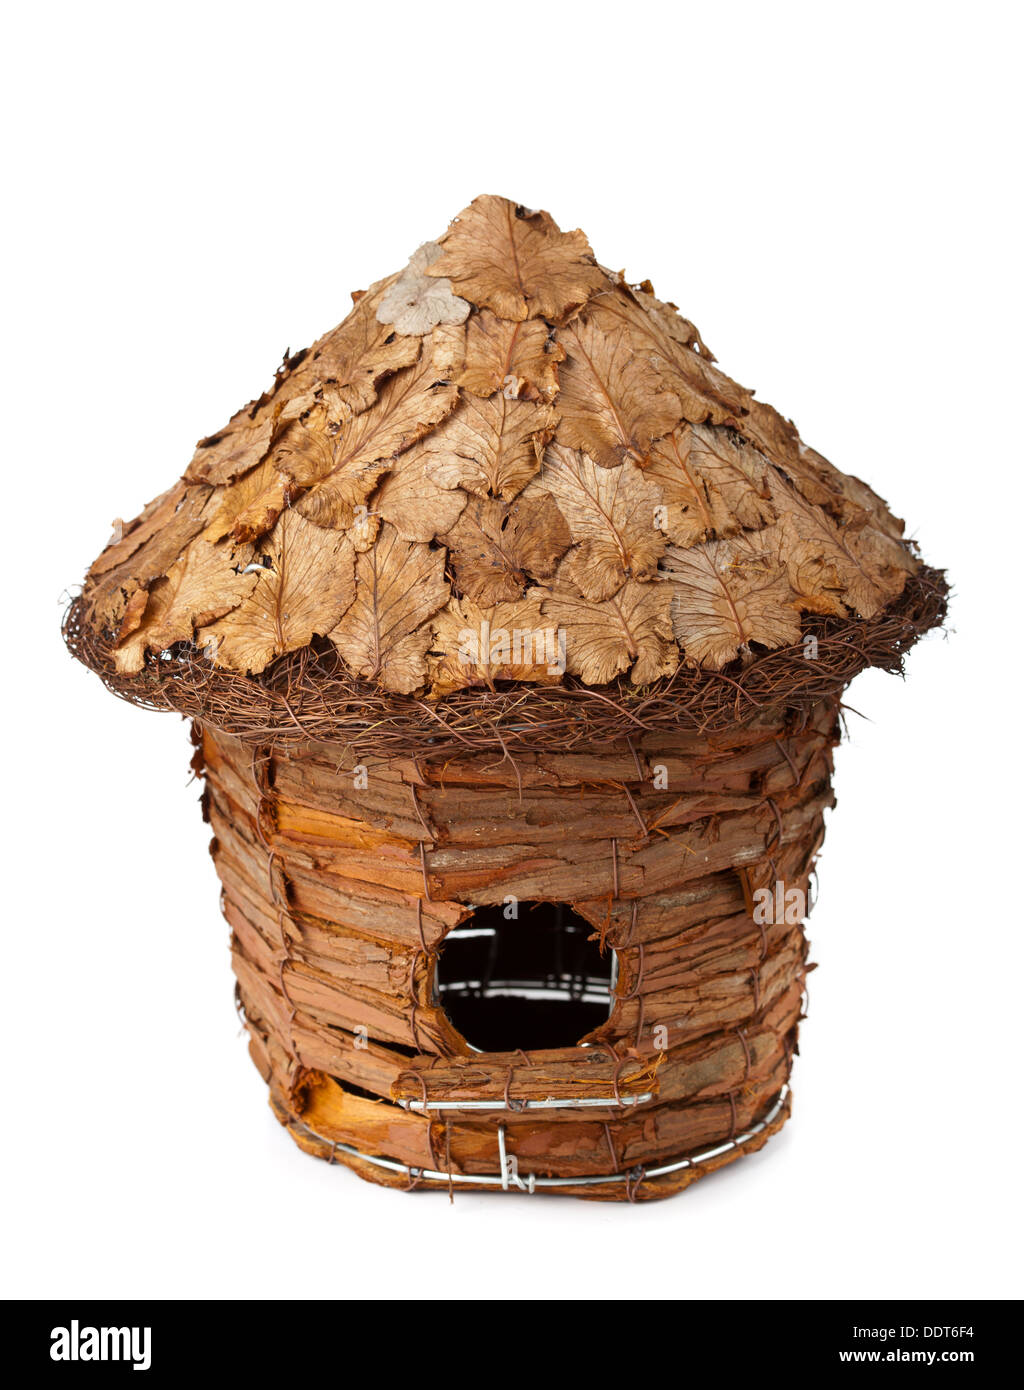 Birdhouse in legno su uno sfondo bianco Foto Stock